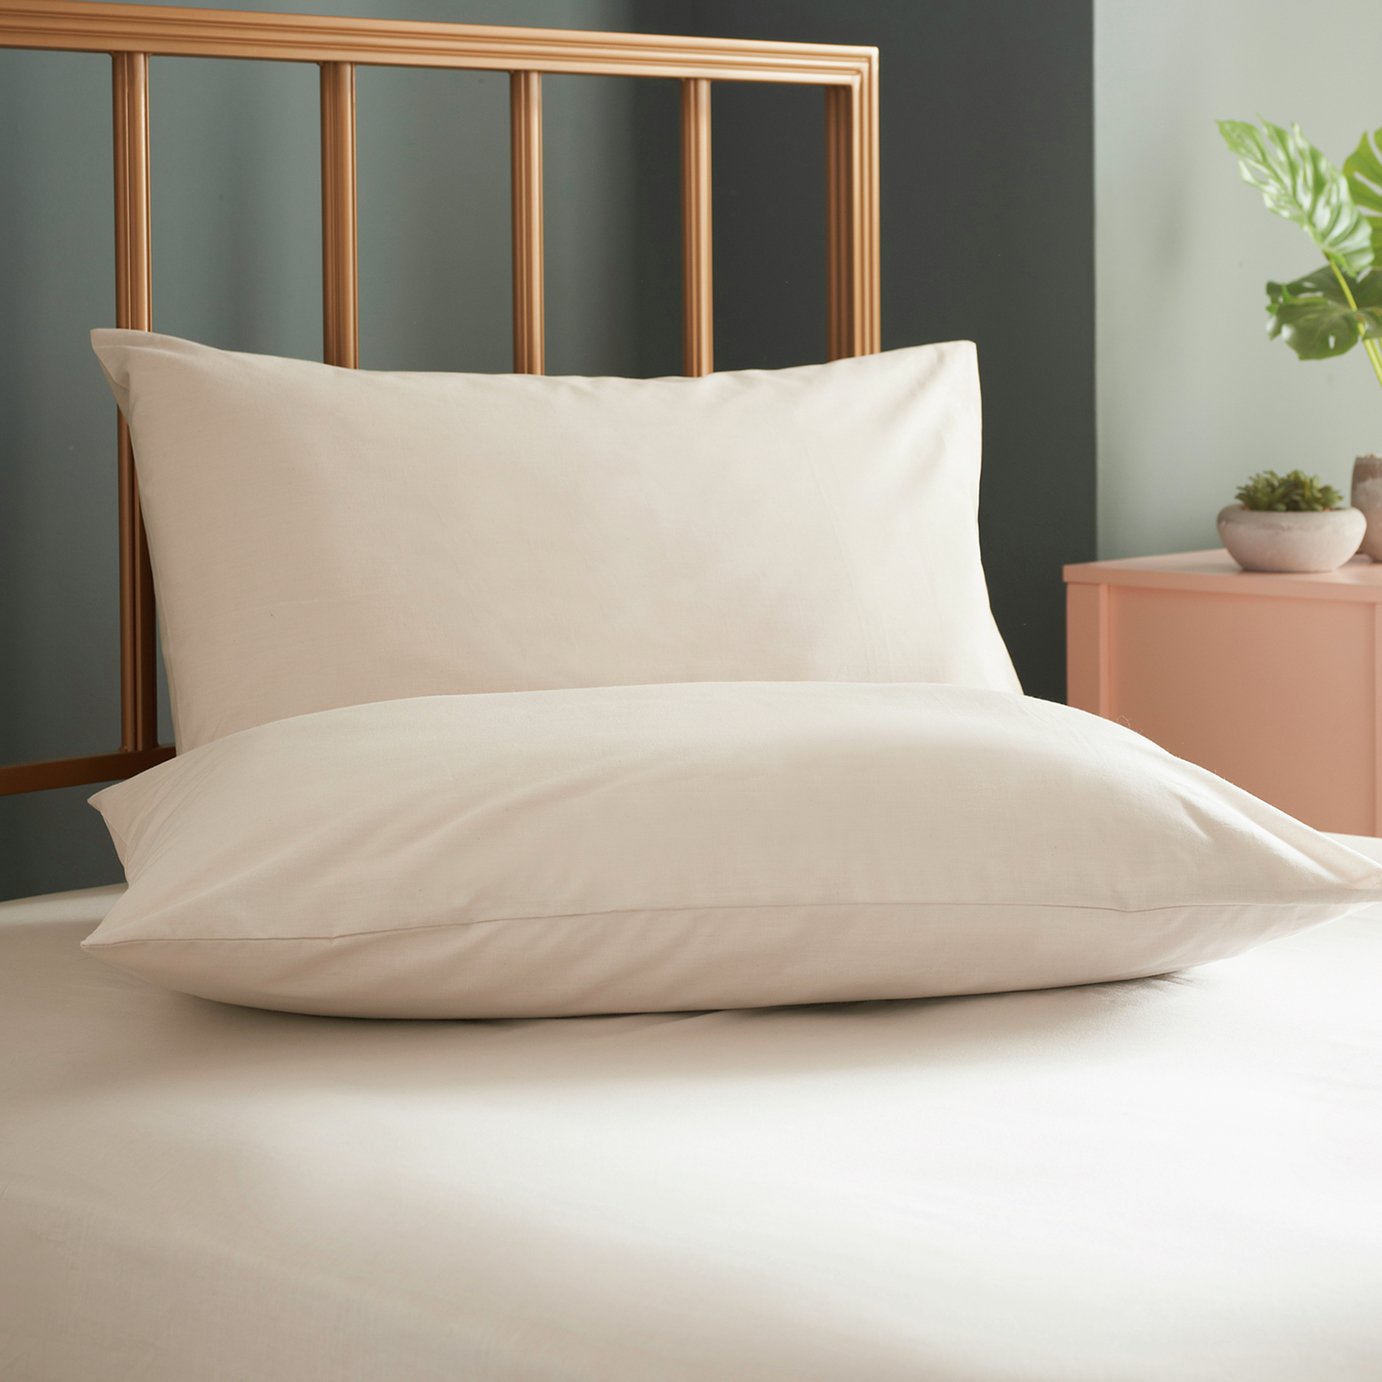 Cosmo Living Plain Standard Pillowcase Pair - Neutral